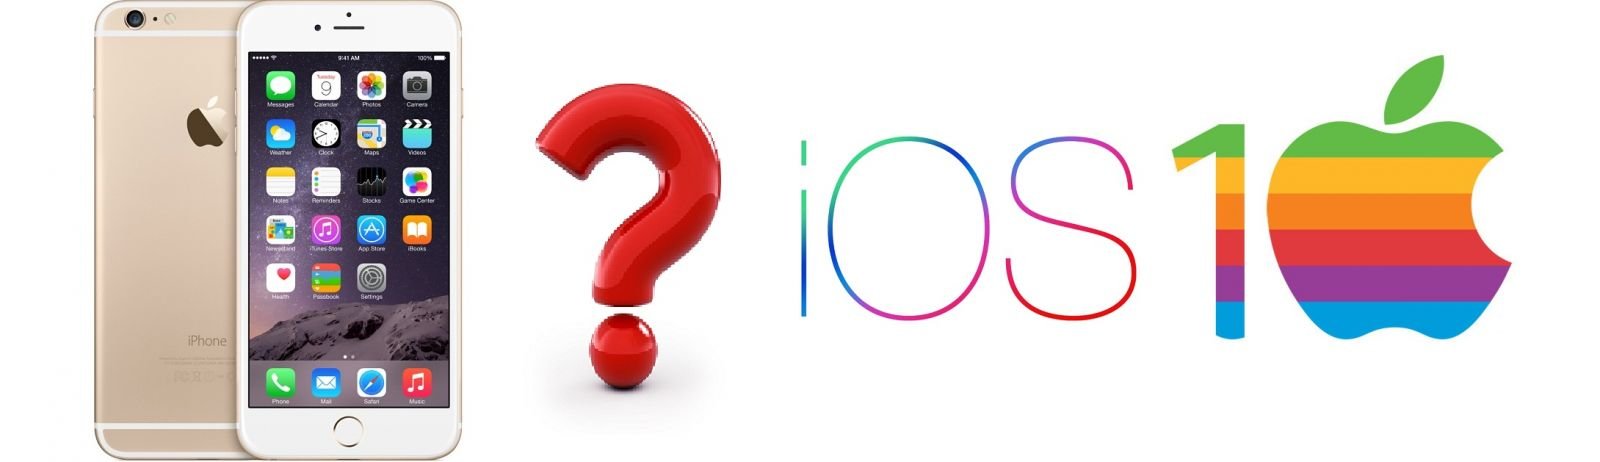 Hướng dẫn nâng cấp iPhone 6 Plus Lock lên iOS 10